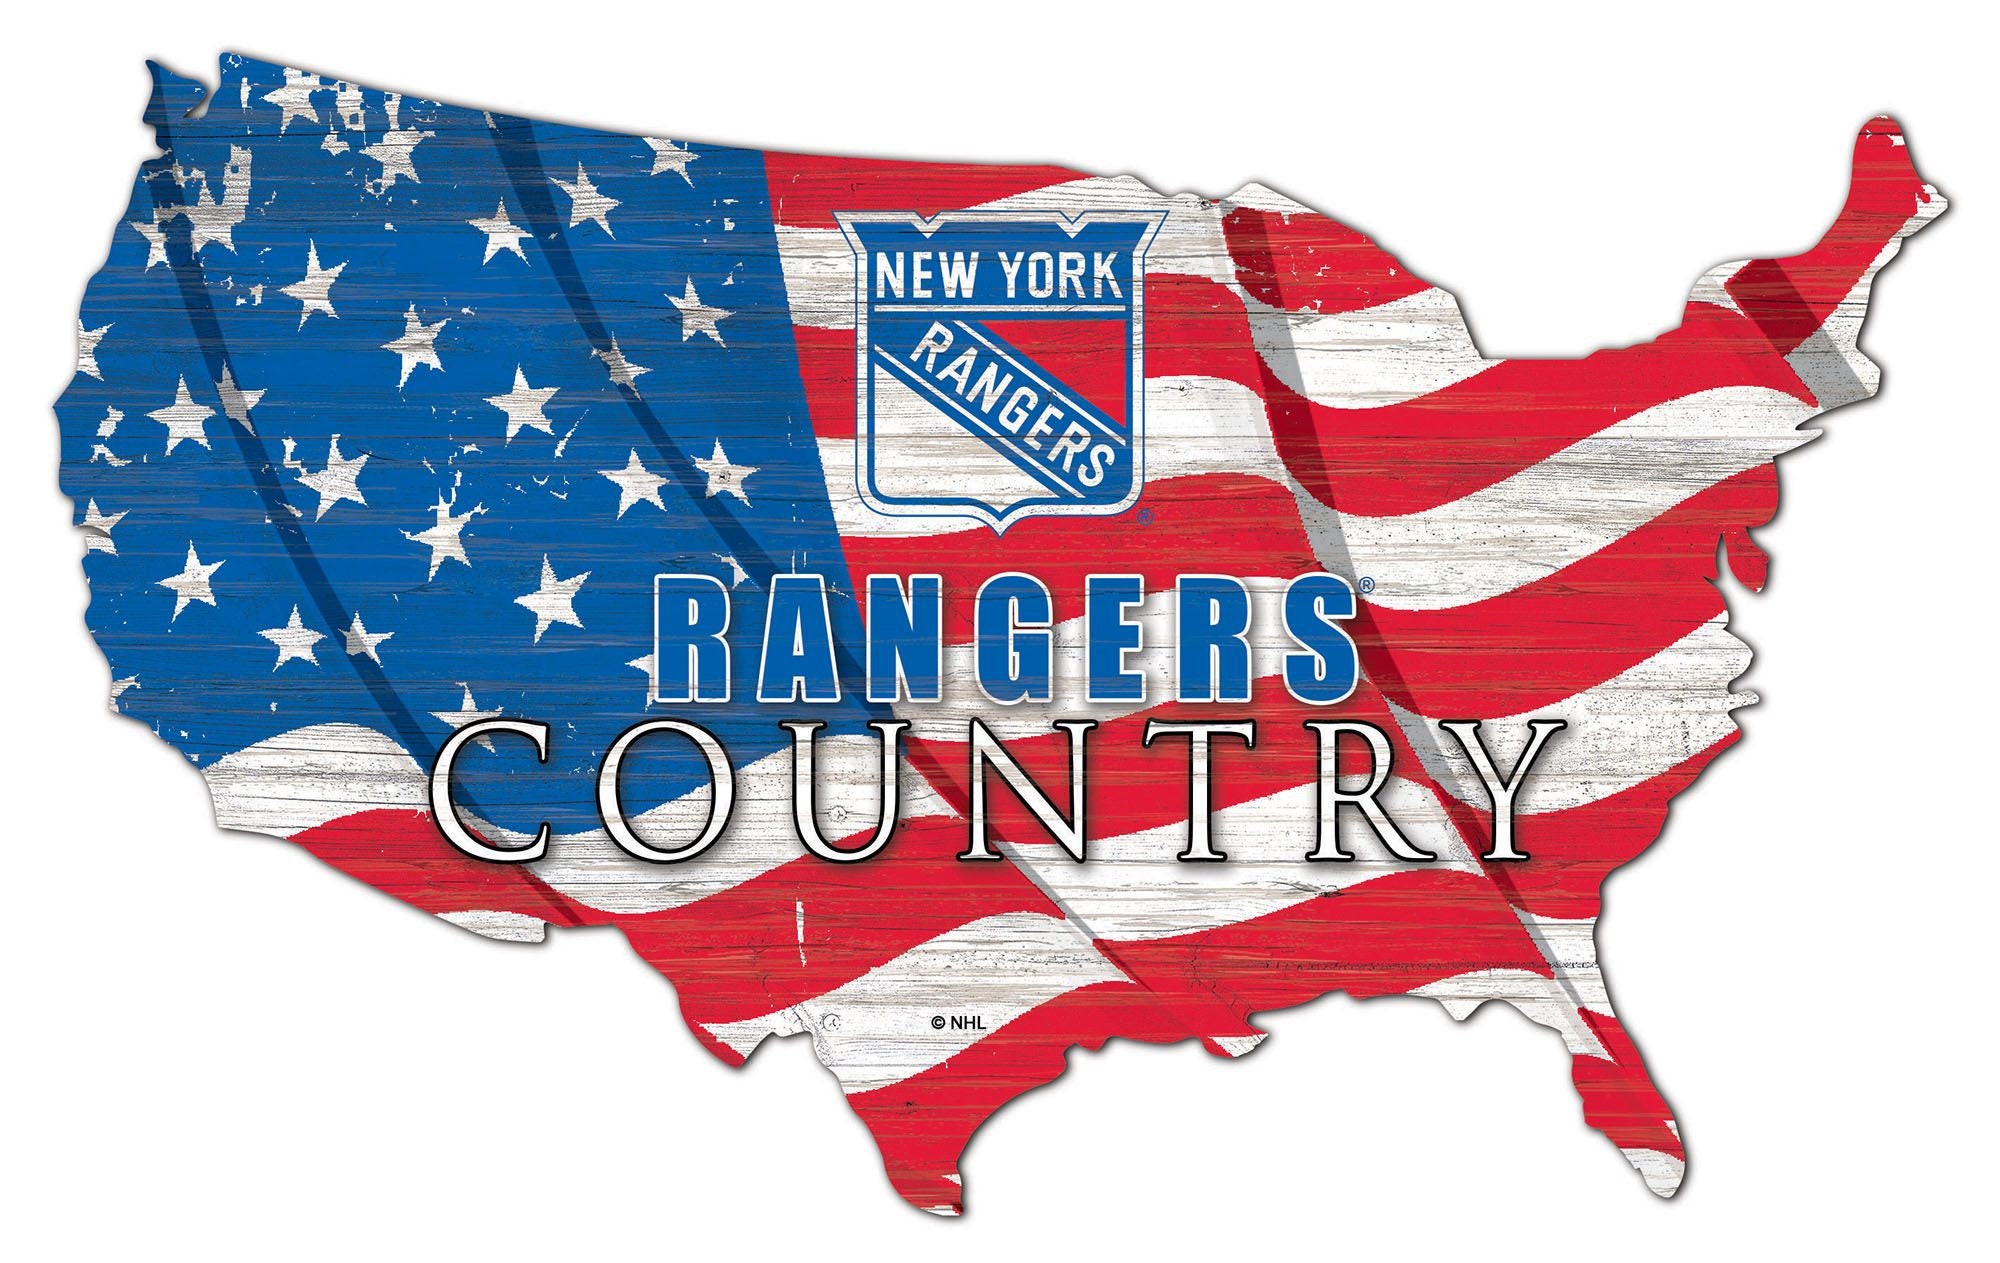 New York Rangers Hockey Team Memorable Flag 90x150cm 3x5ft Best Banner